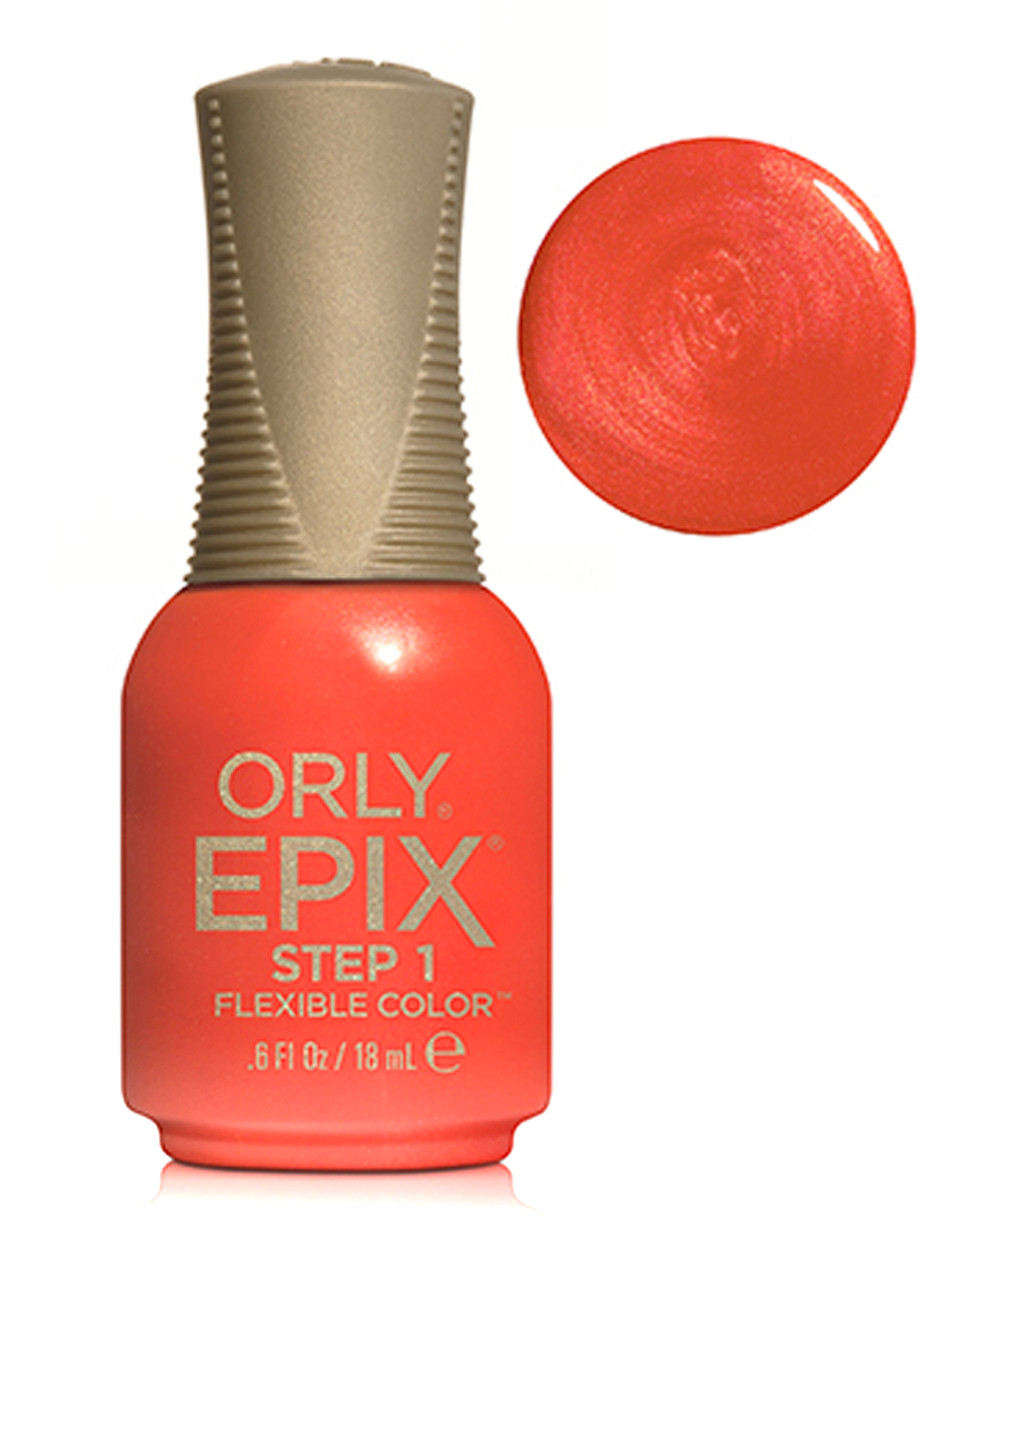 Эластичное цветное покрытие Epix Flexible Color №29921 Improv Orly (83228197)